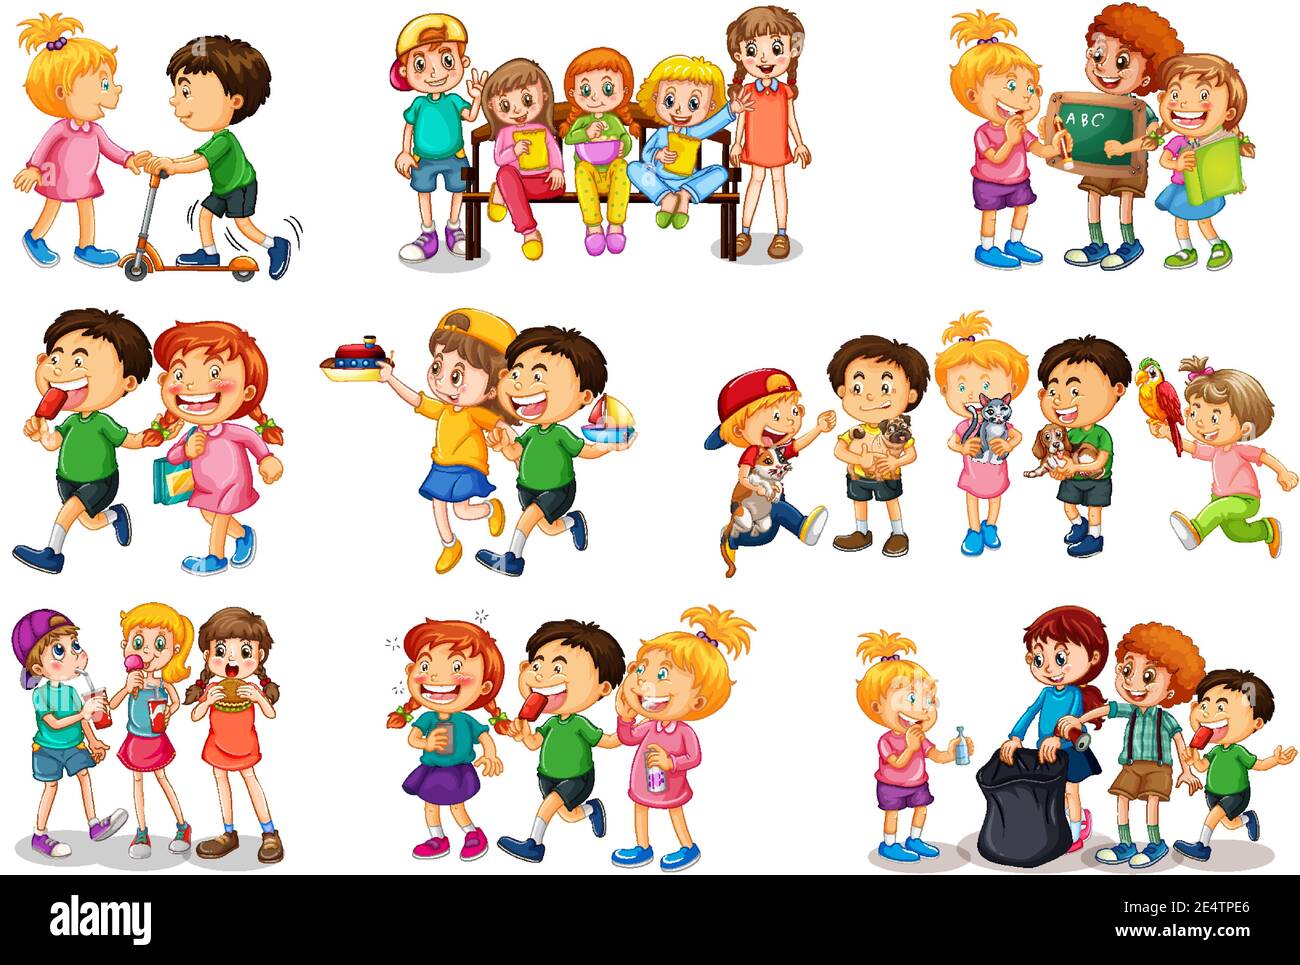 Niños jugando a diferentes juegos y juguetes. personajes ambientados en  estilo de dibujos animados. juego infantil con juguetes, personajes,  ilustración de juegos de niñas y niños